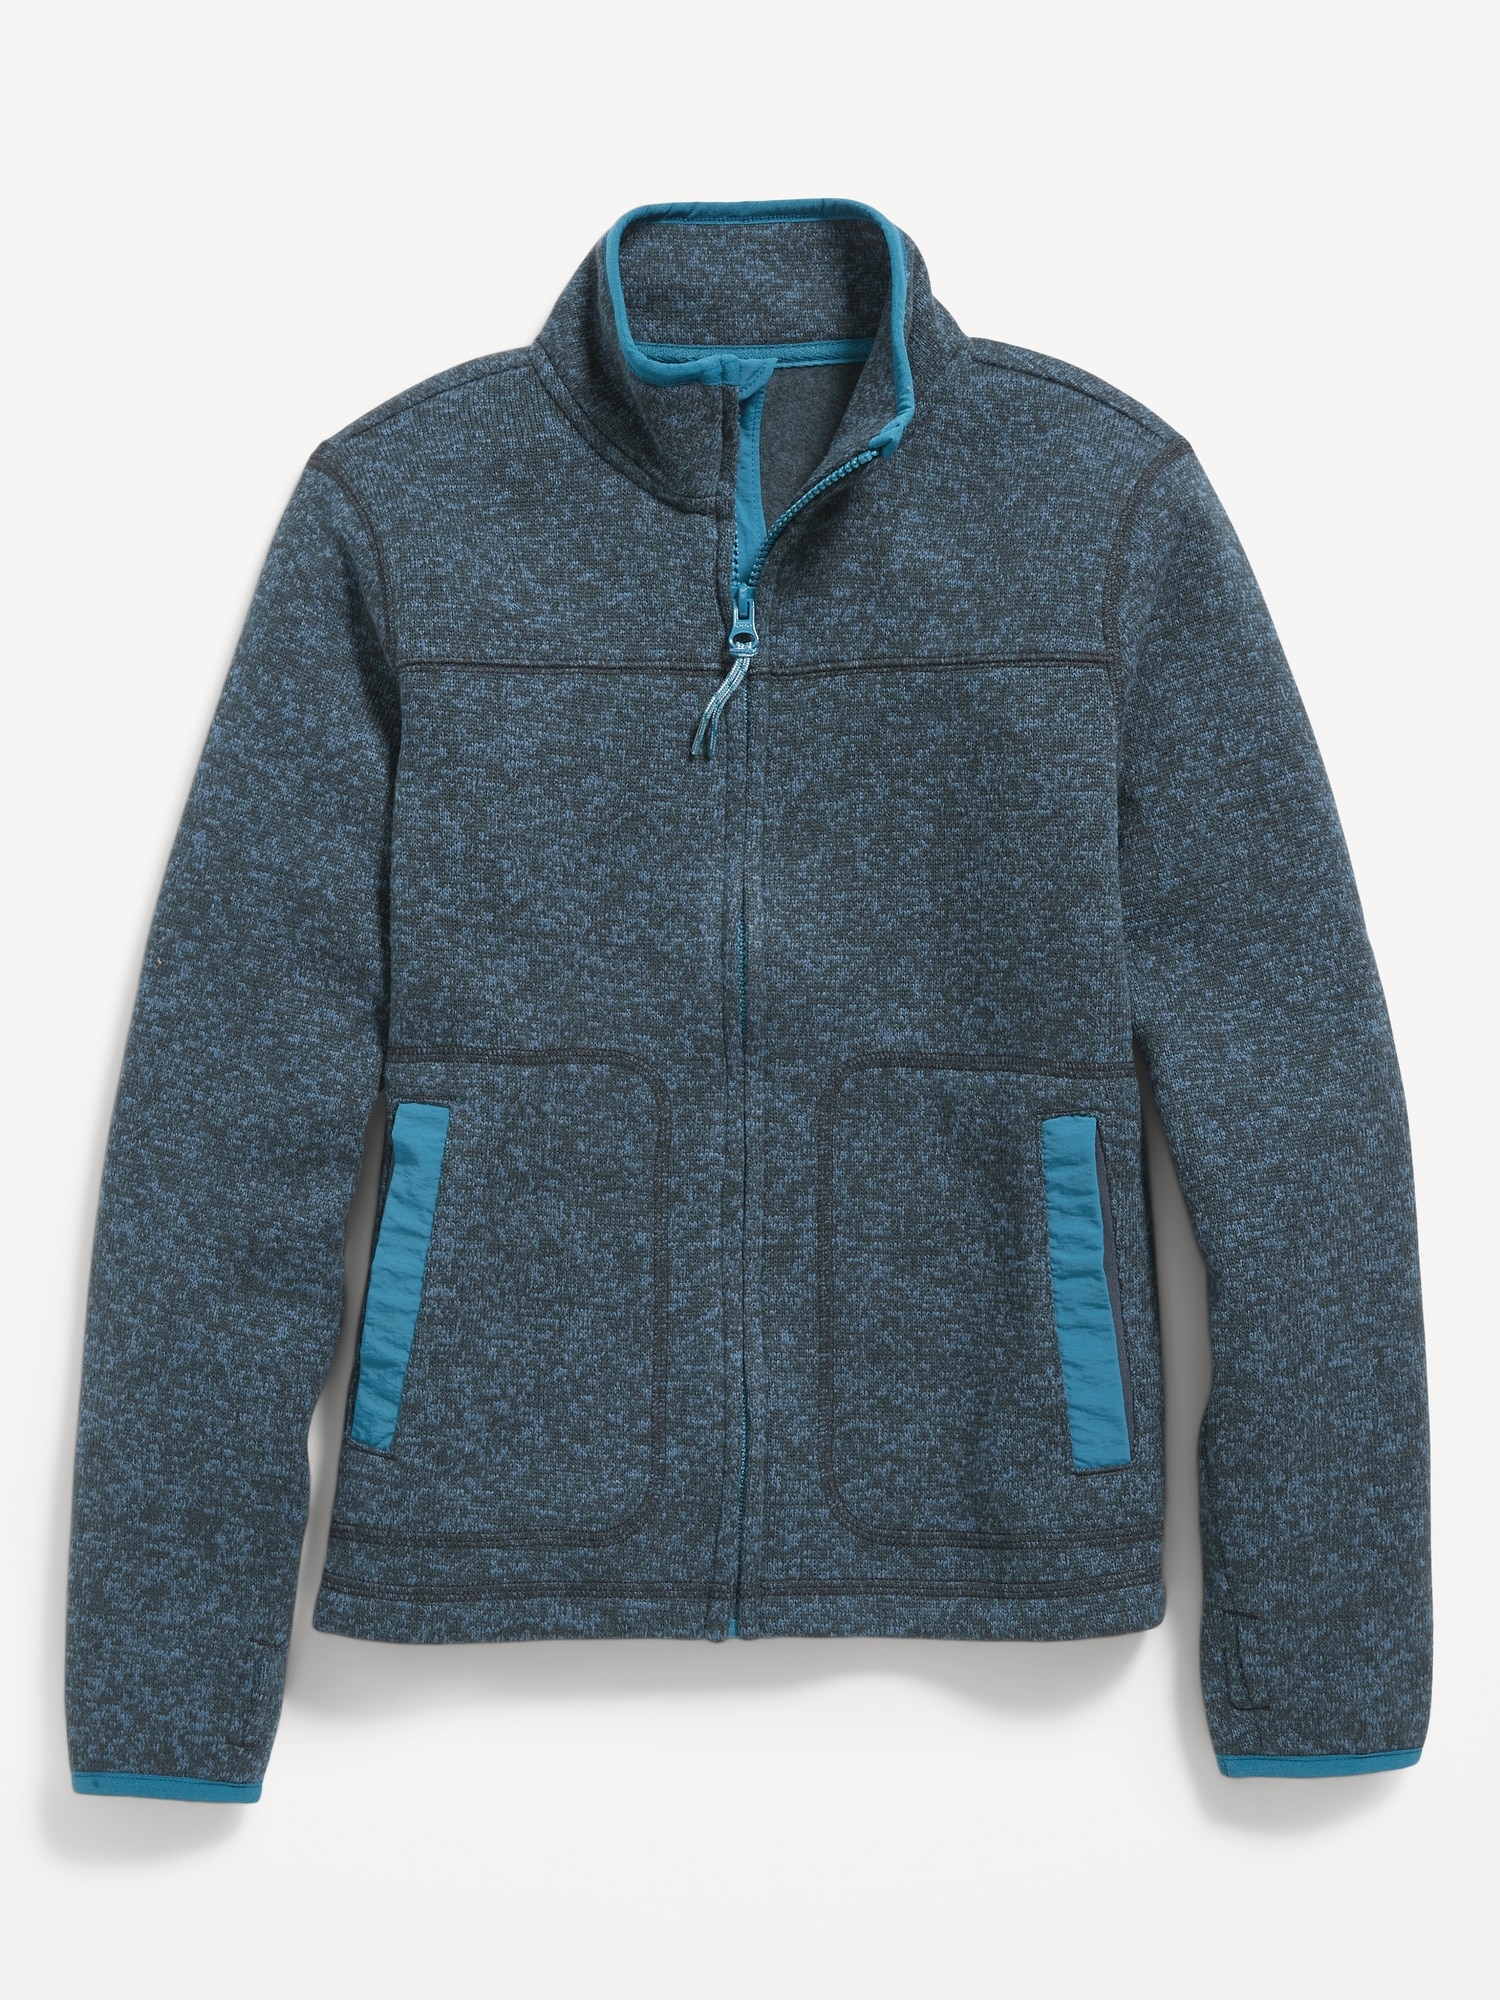 Sweater-Fleece Mock-Neck Zip Jacket for Boys | Old Navy